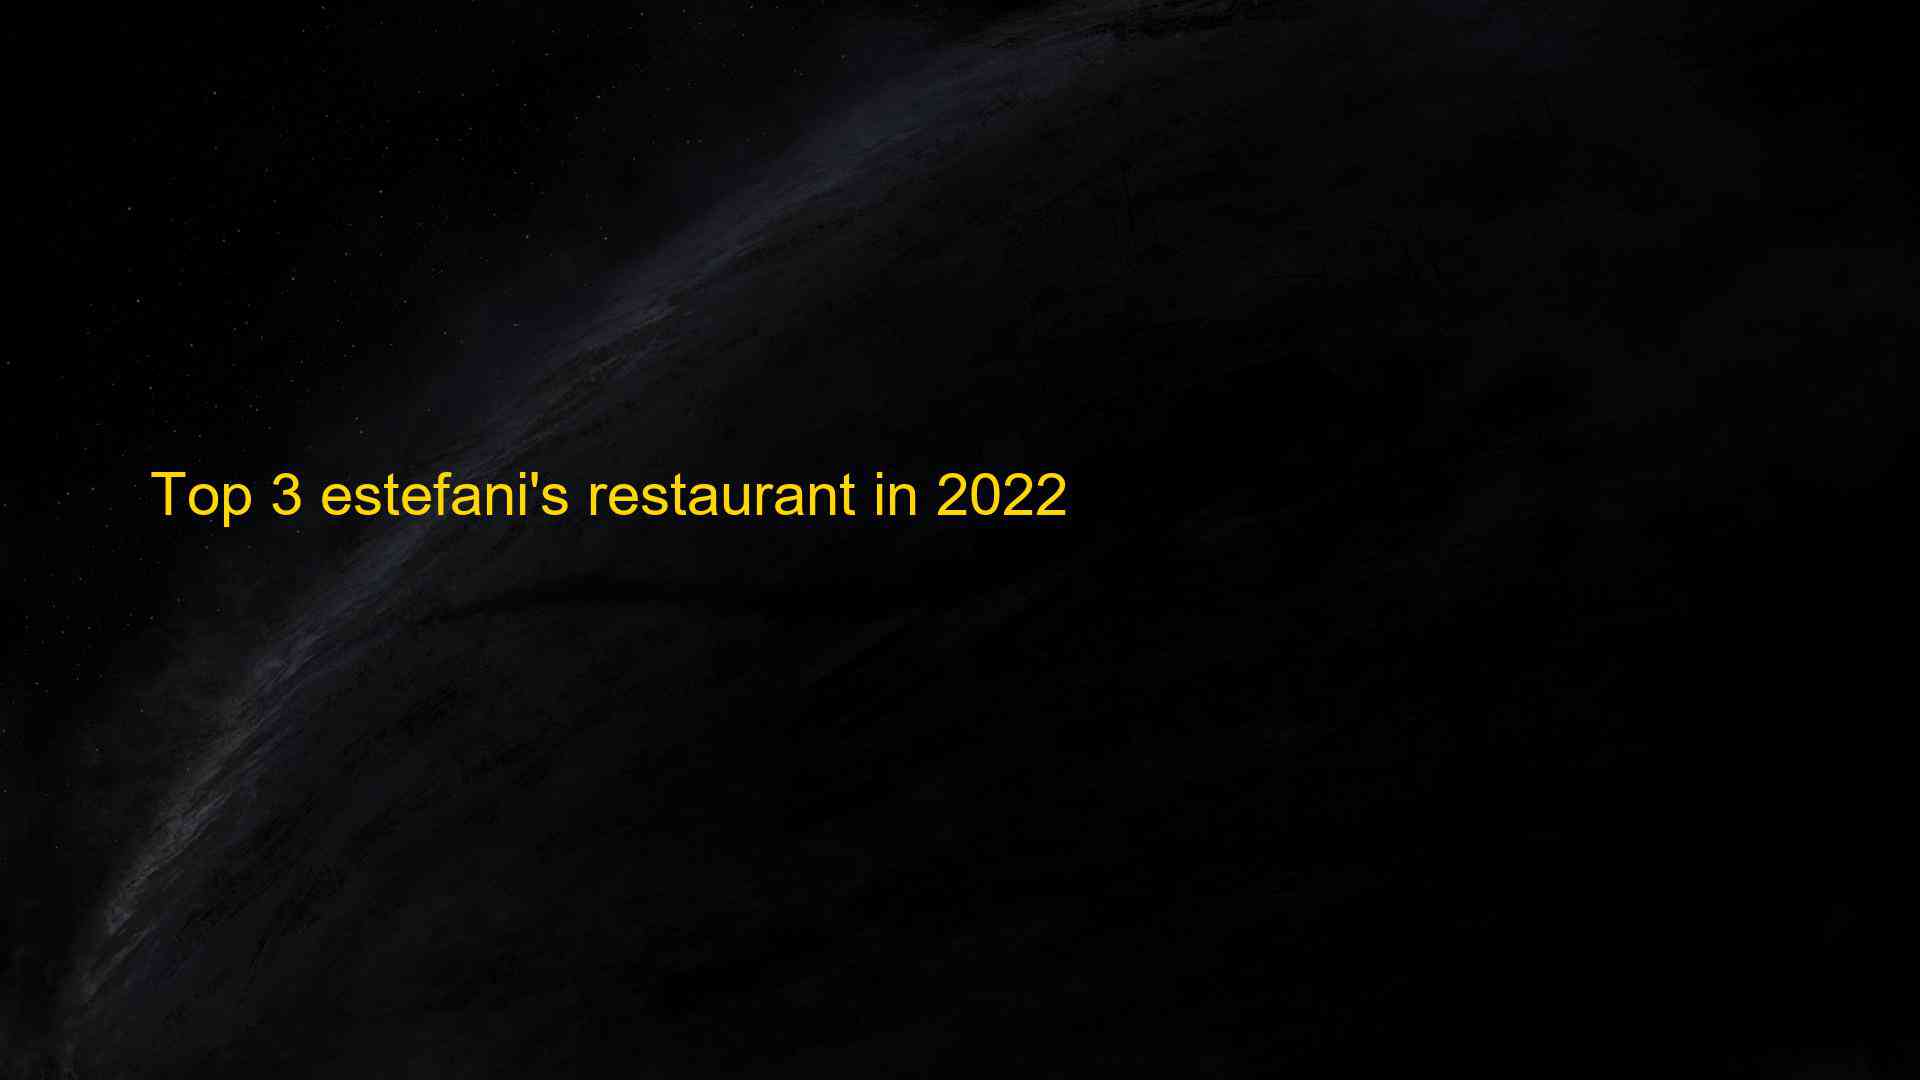 Top 3 estefanis restaurant in 2022 1663211965